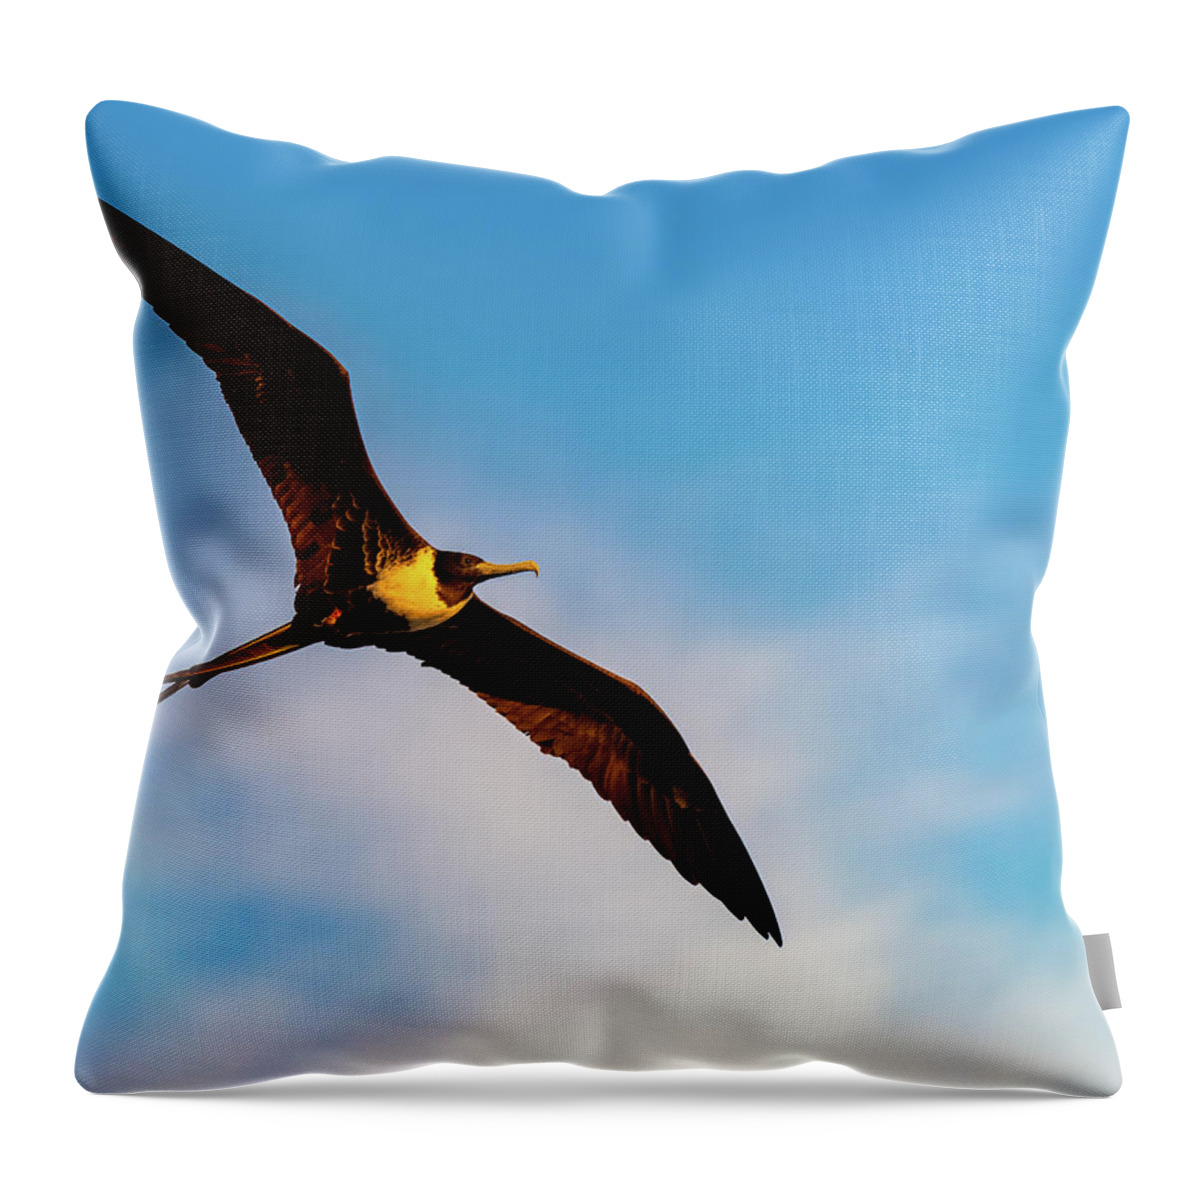 Bird Throw Pillow featuring the photograph Frigatebird by William Dickman